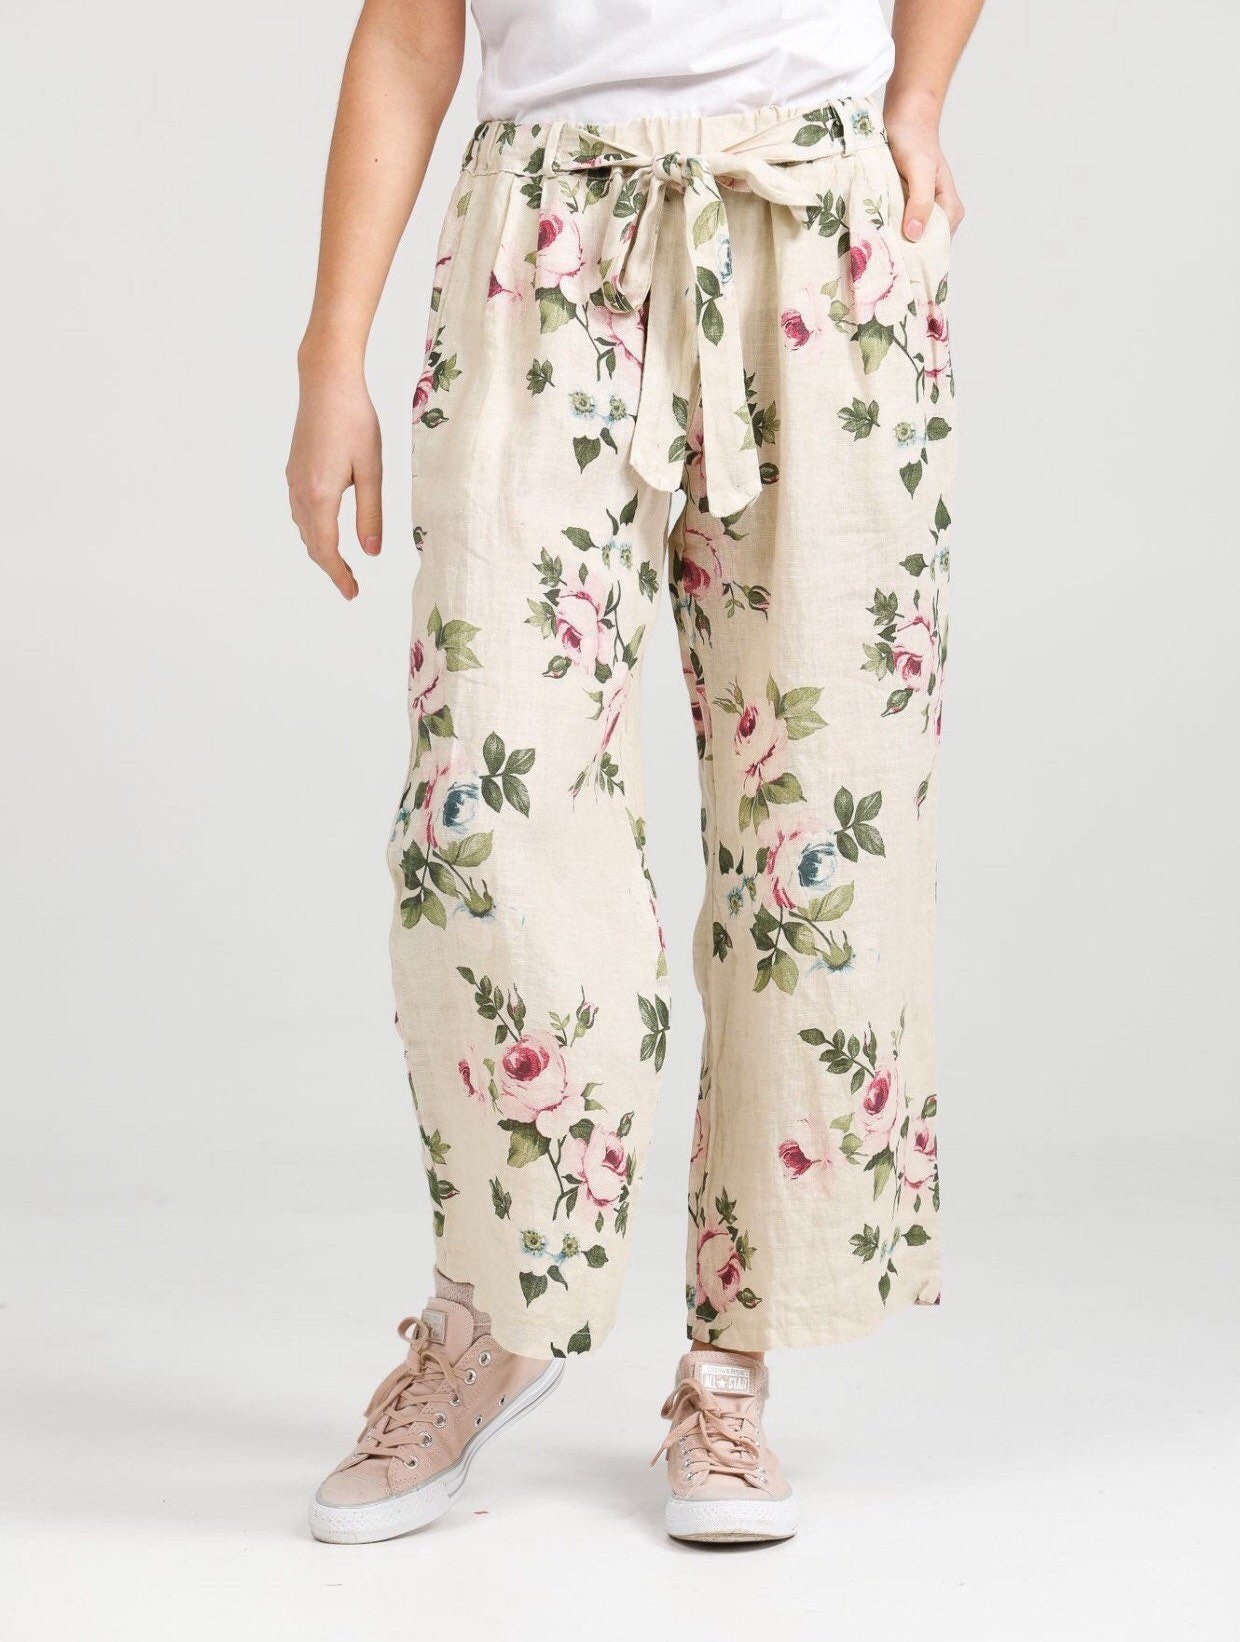 Linen trousers . Floral linen pants . Floral Eva pants by Miss | Etsy